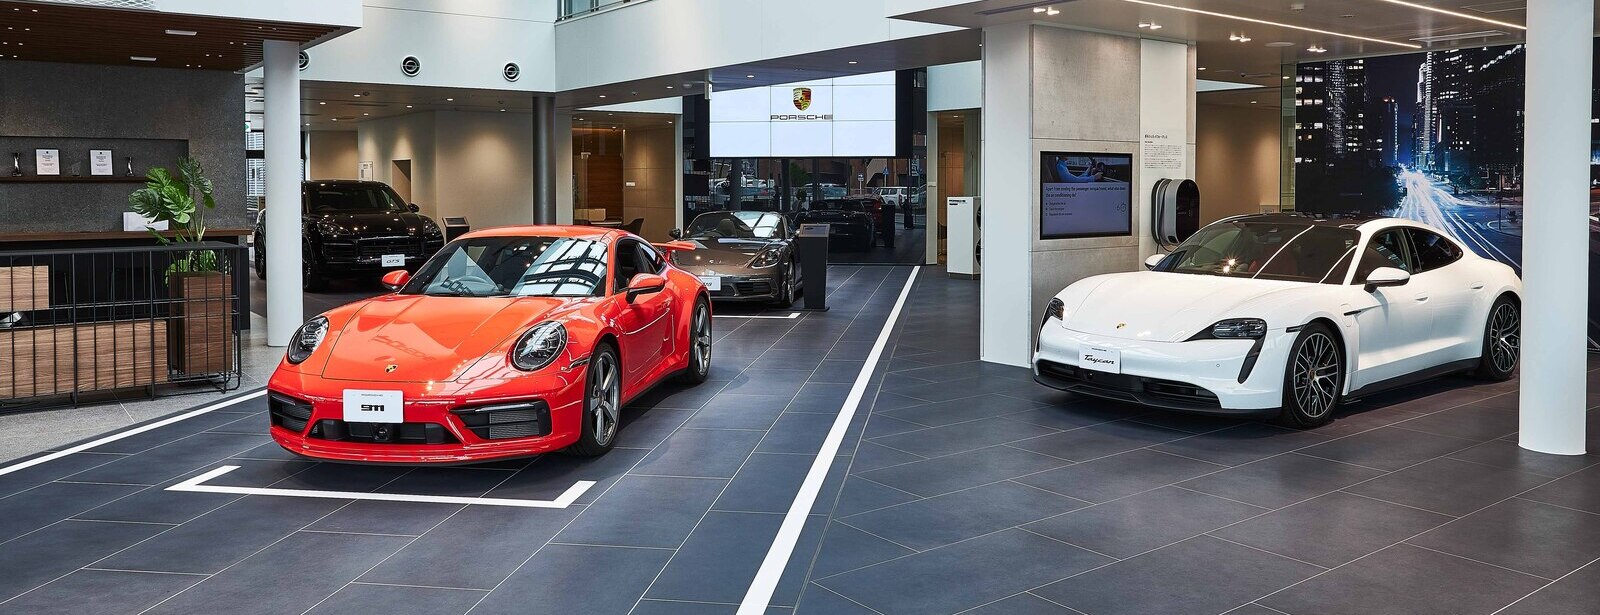 Porsche Center Ueda